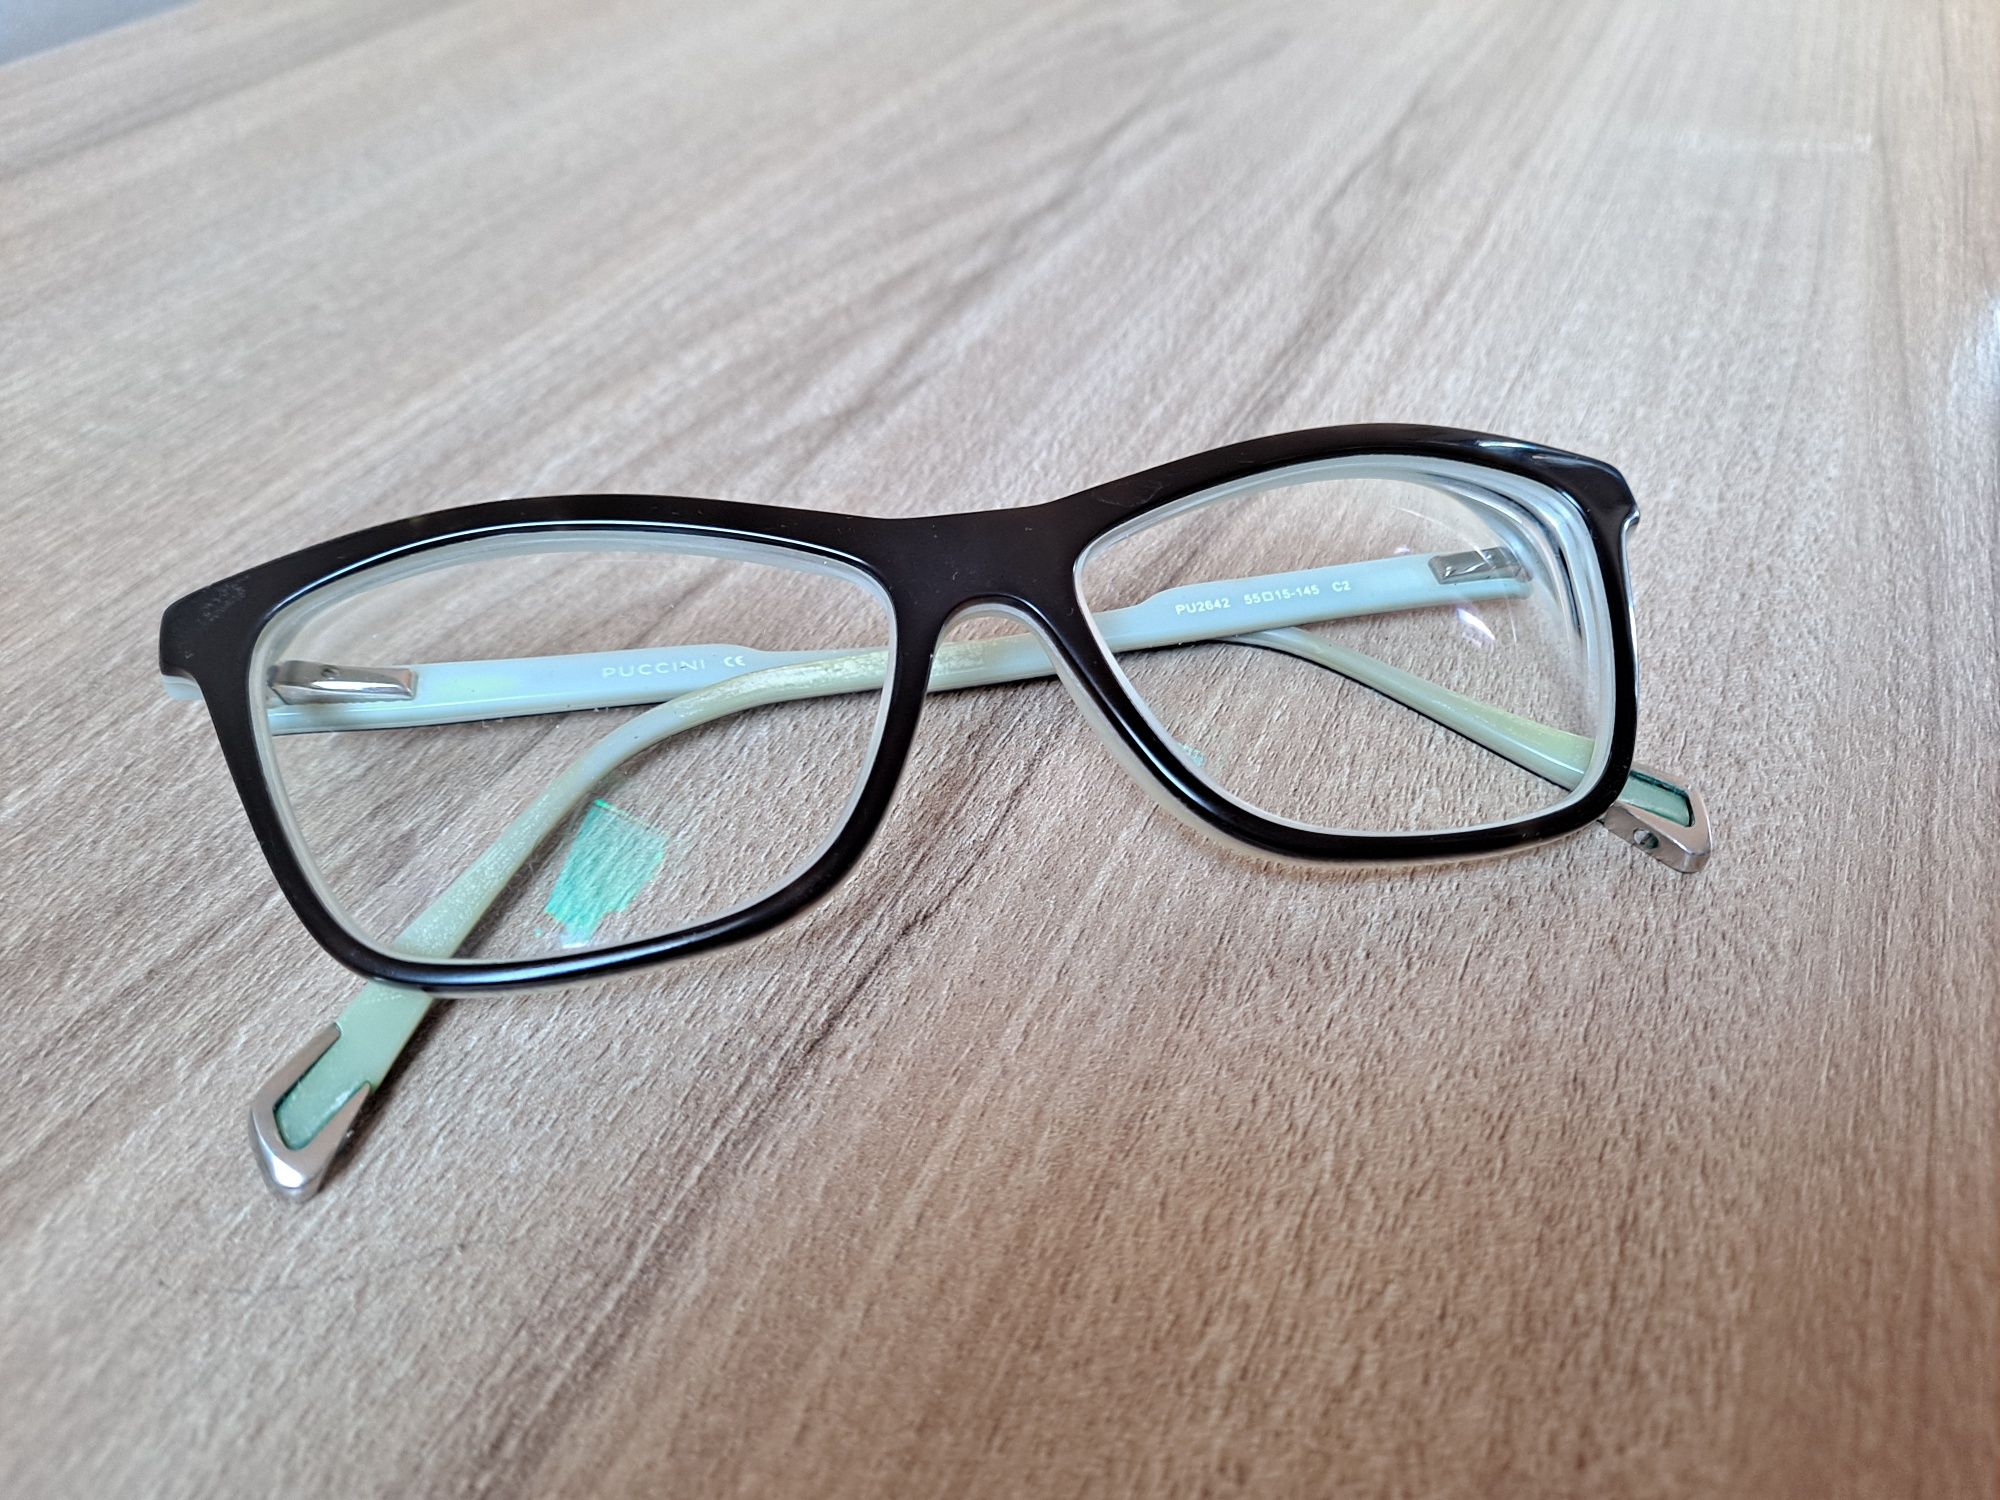 Okulary Puccini oprawki czarne plastikowe nerdy kocie